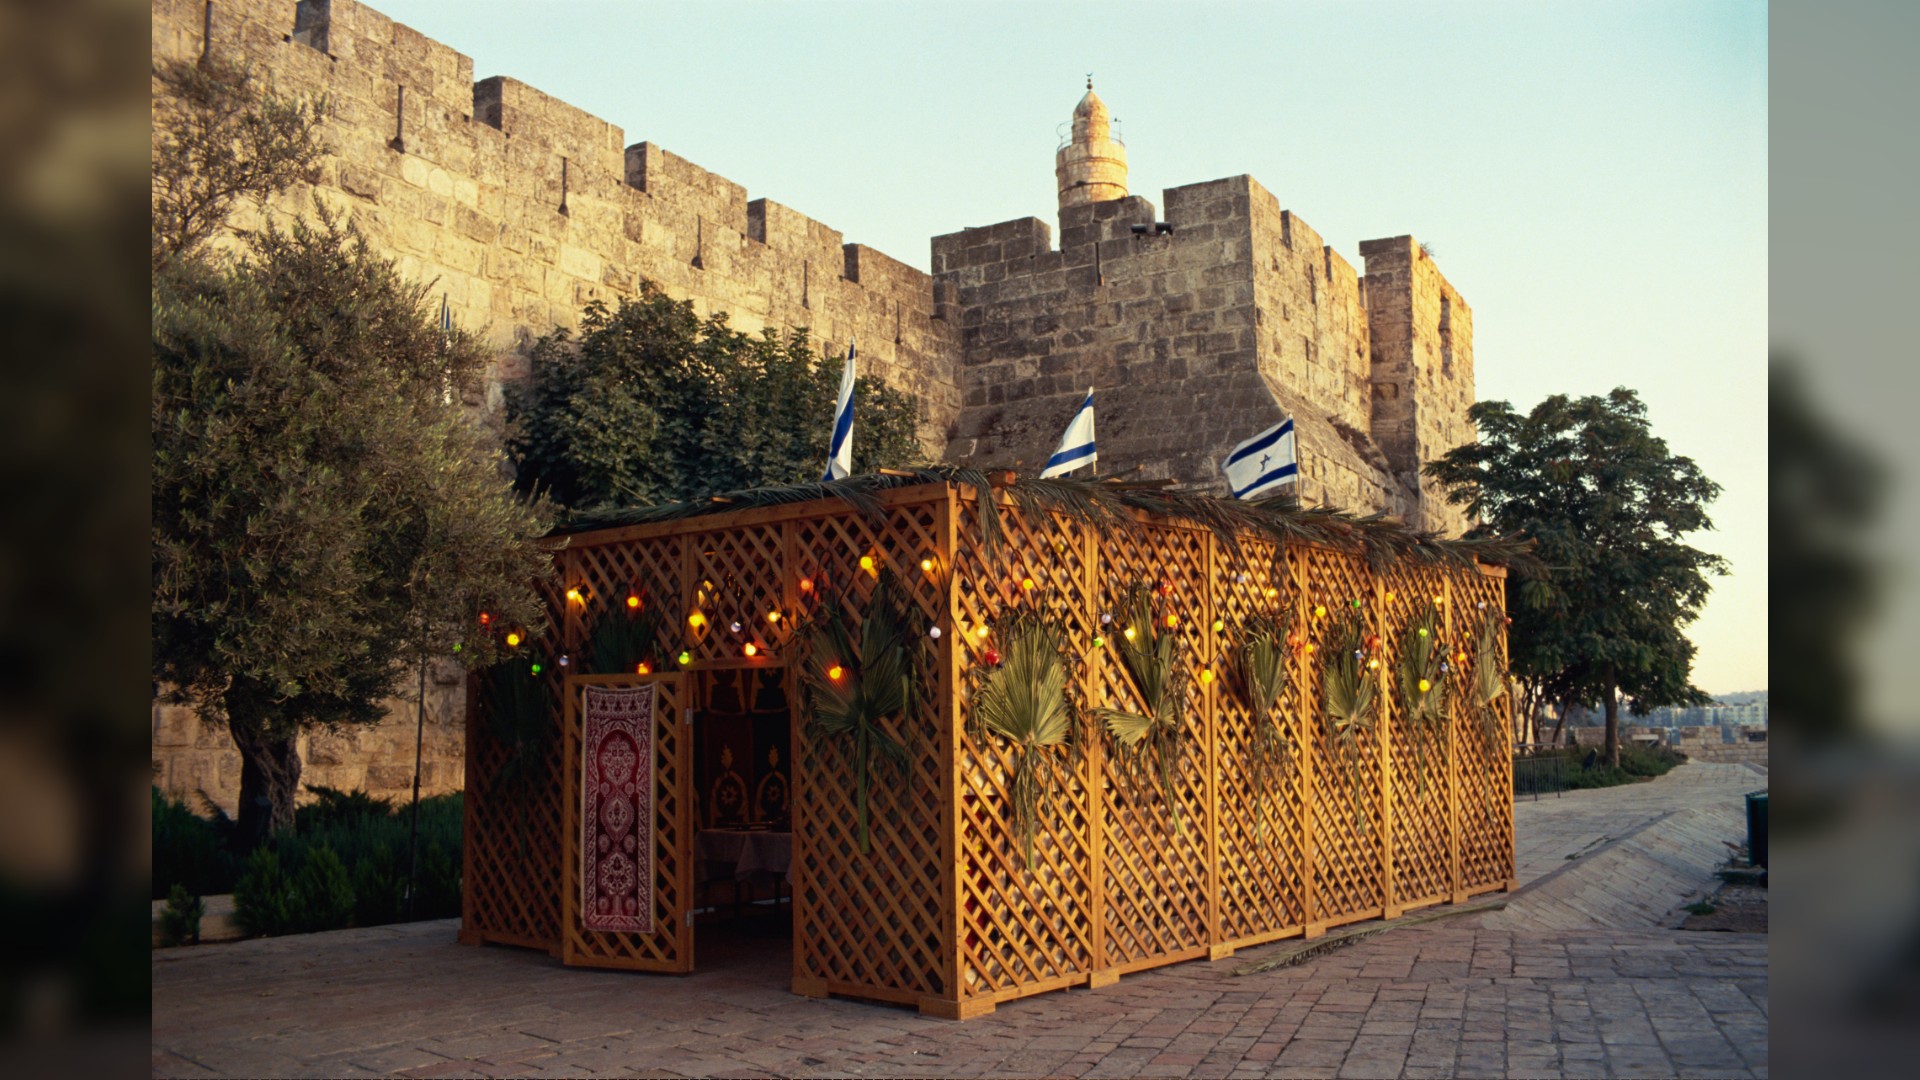 Aquí vemos un Sucot (un pequeño edificio/soporte de madera con banderas israelíes en la parte superior) frente a la Torre de David (ciudadela con paredes de piedra) en Jerusalén, Israel.